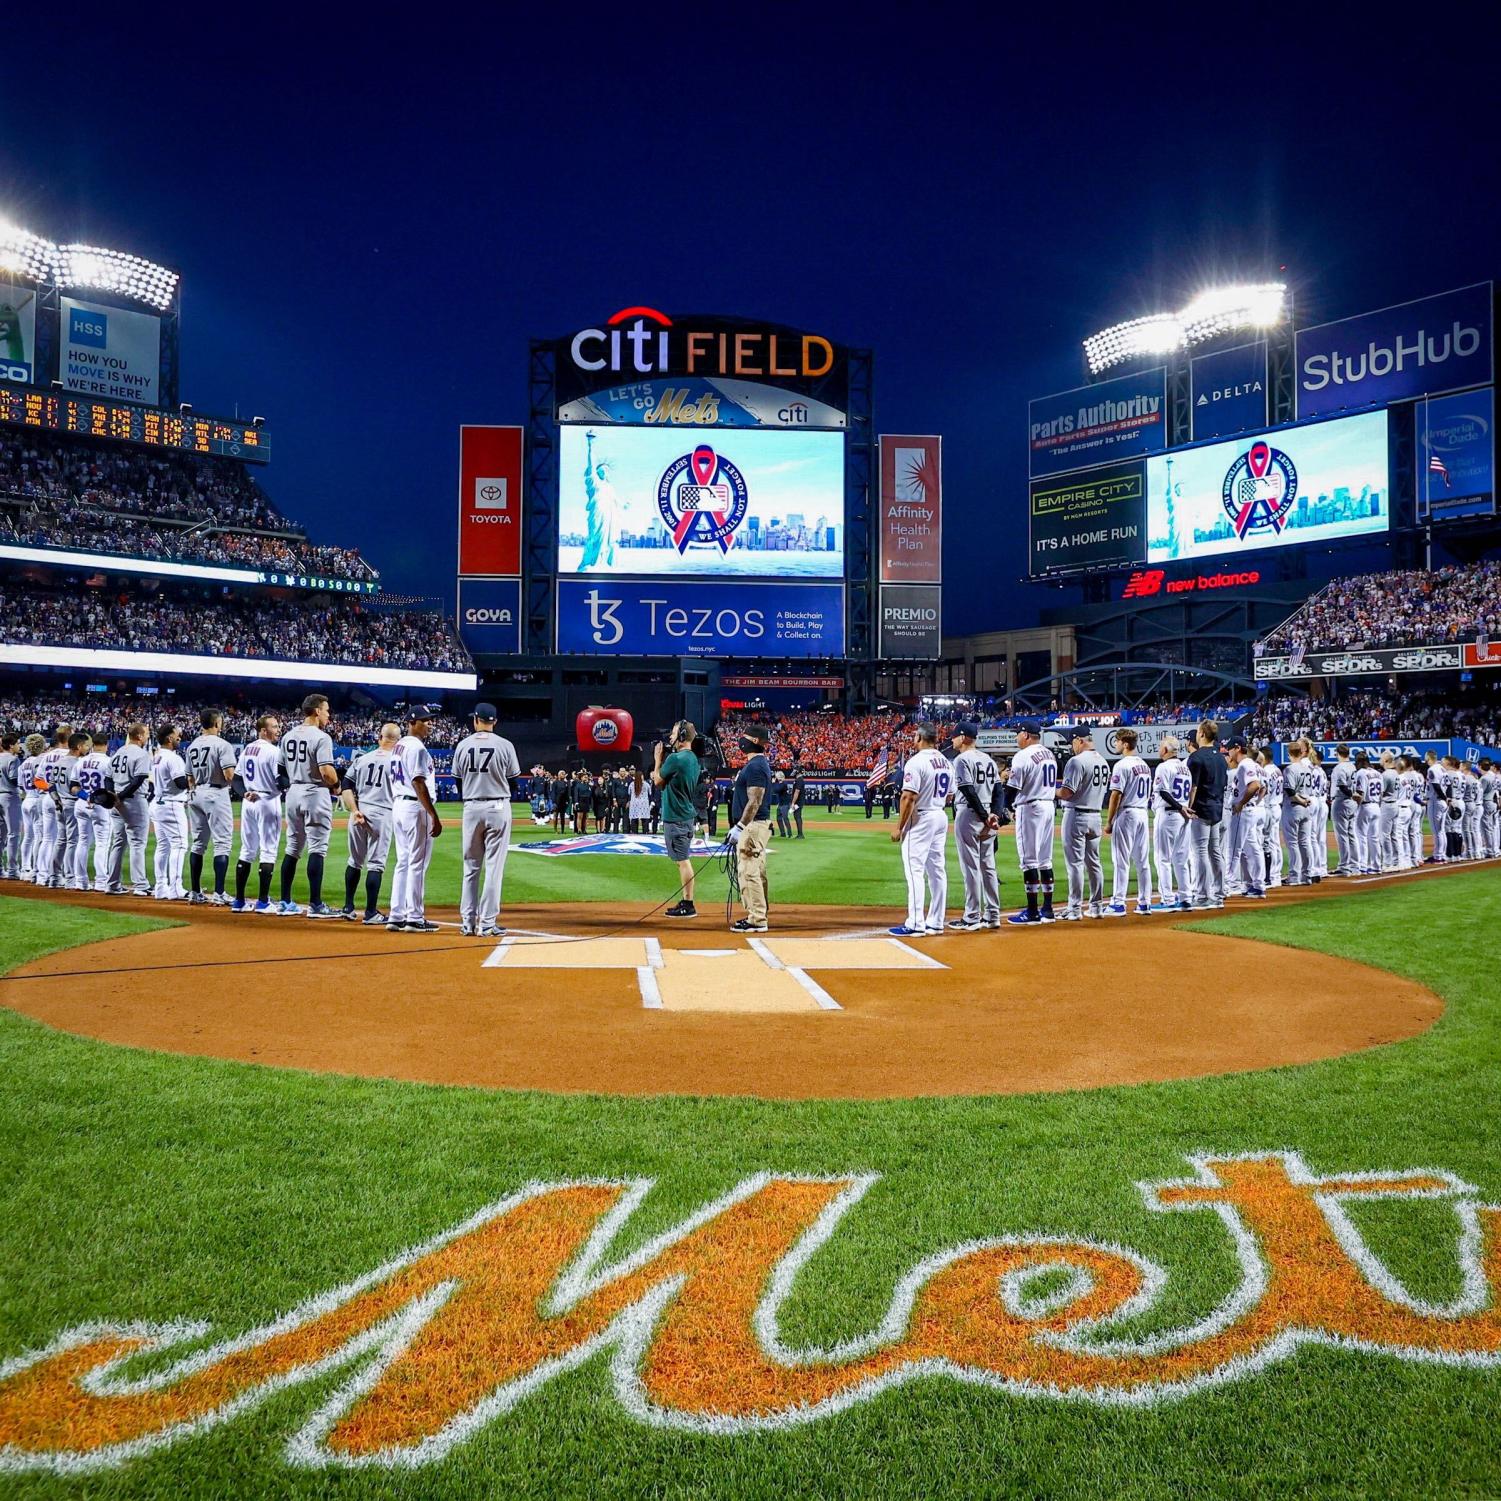 Mets rout reeling Yankees in Subway Series opener